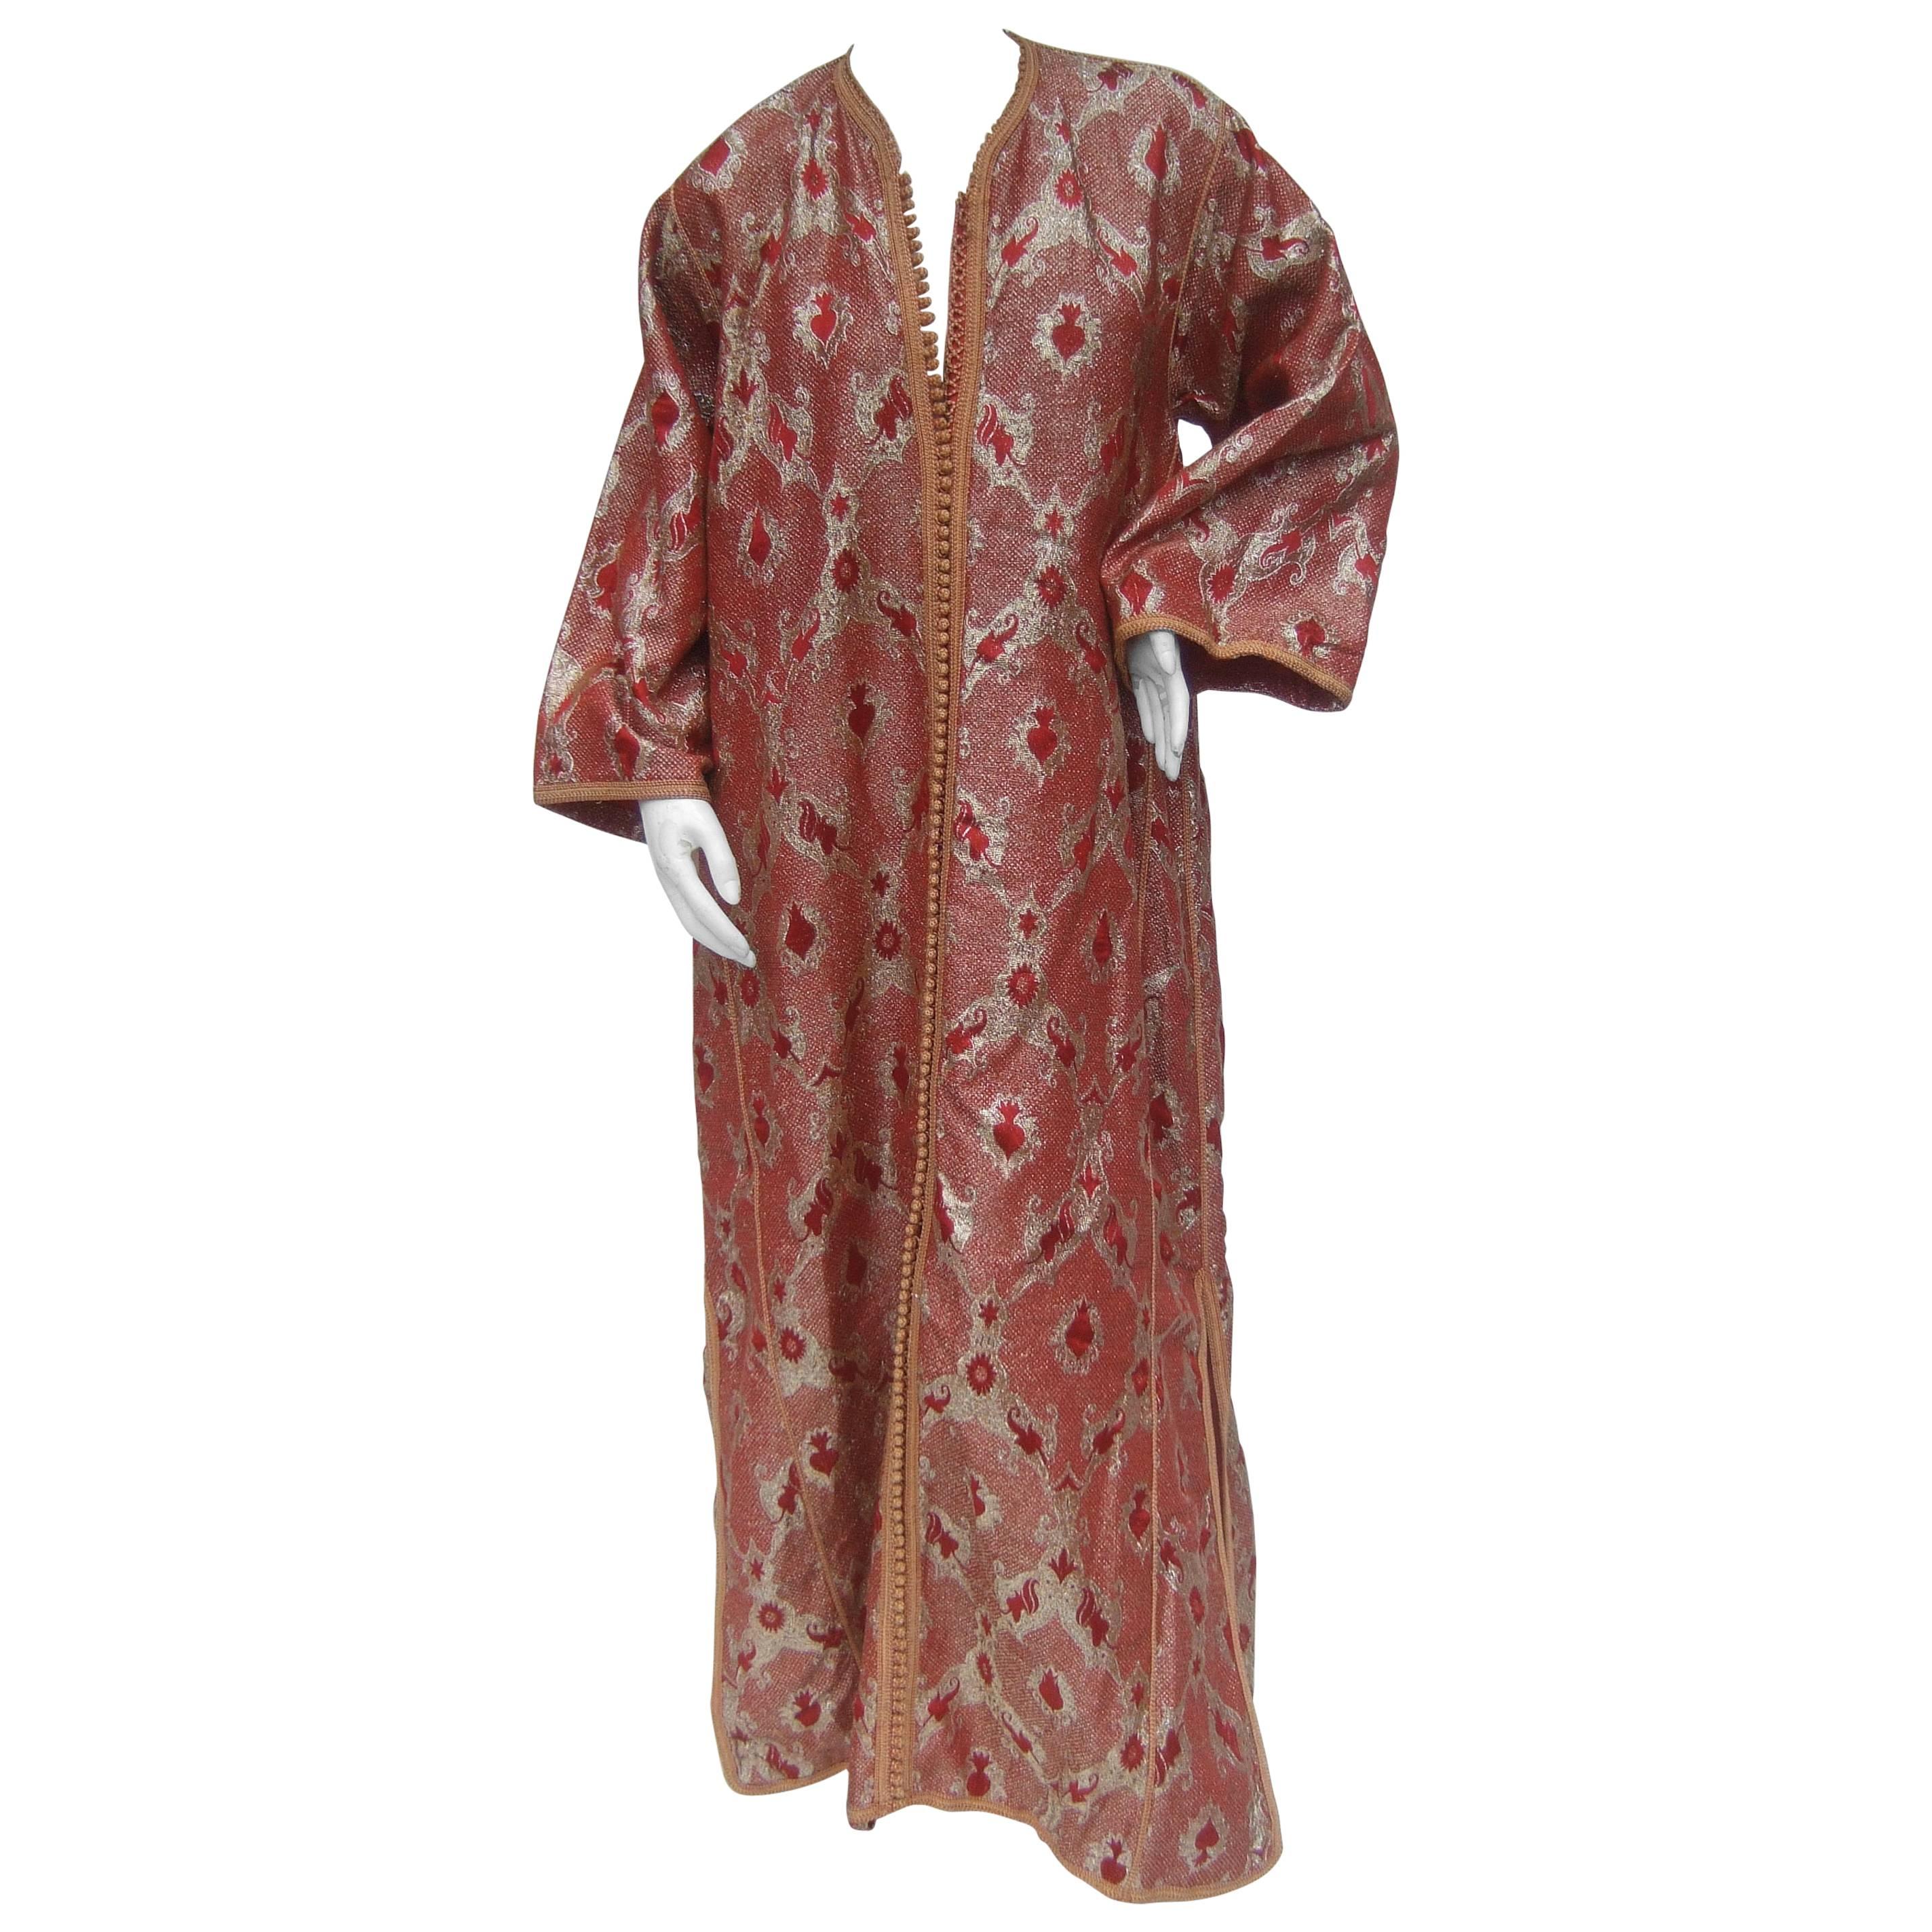 Exotic Metalllic Brocade Caftan Gown c 1970s